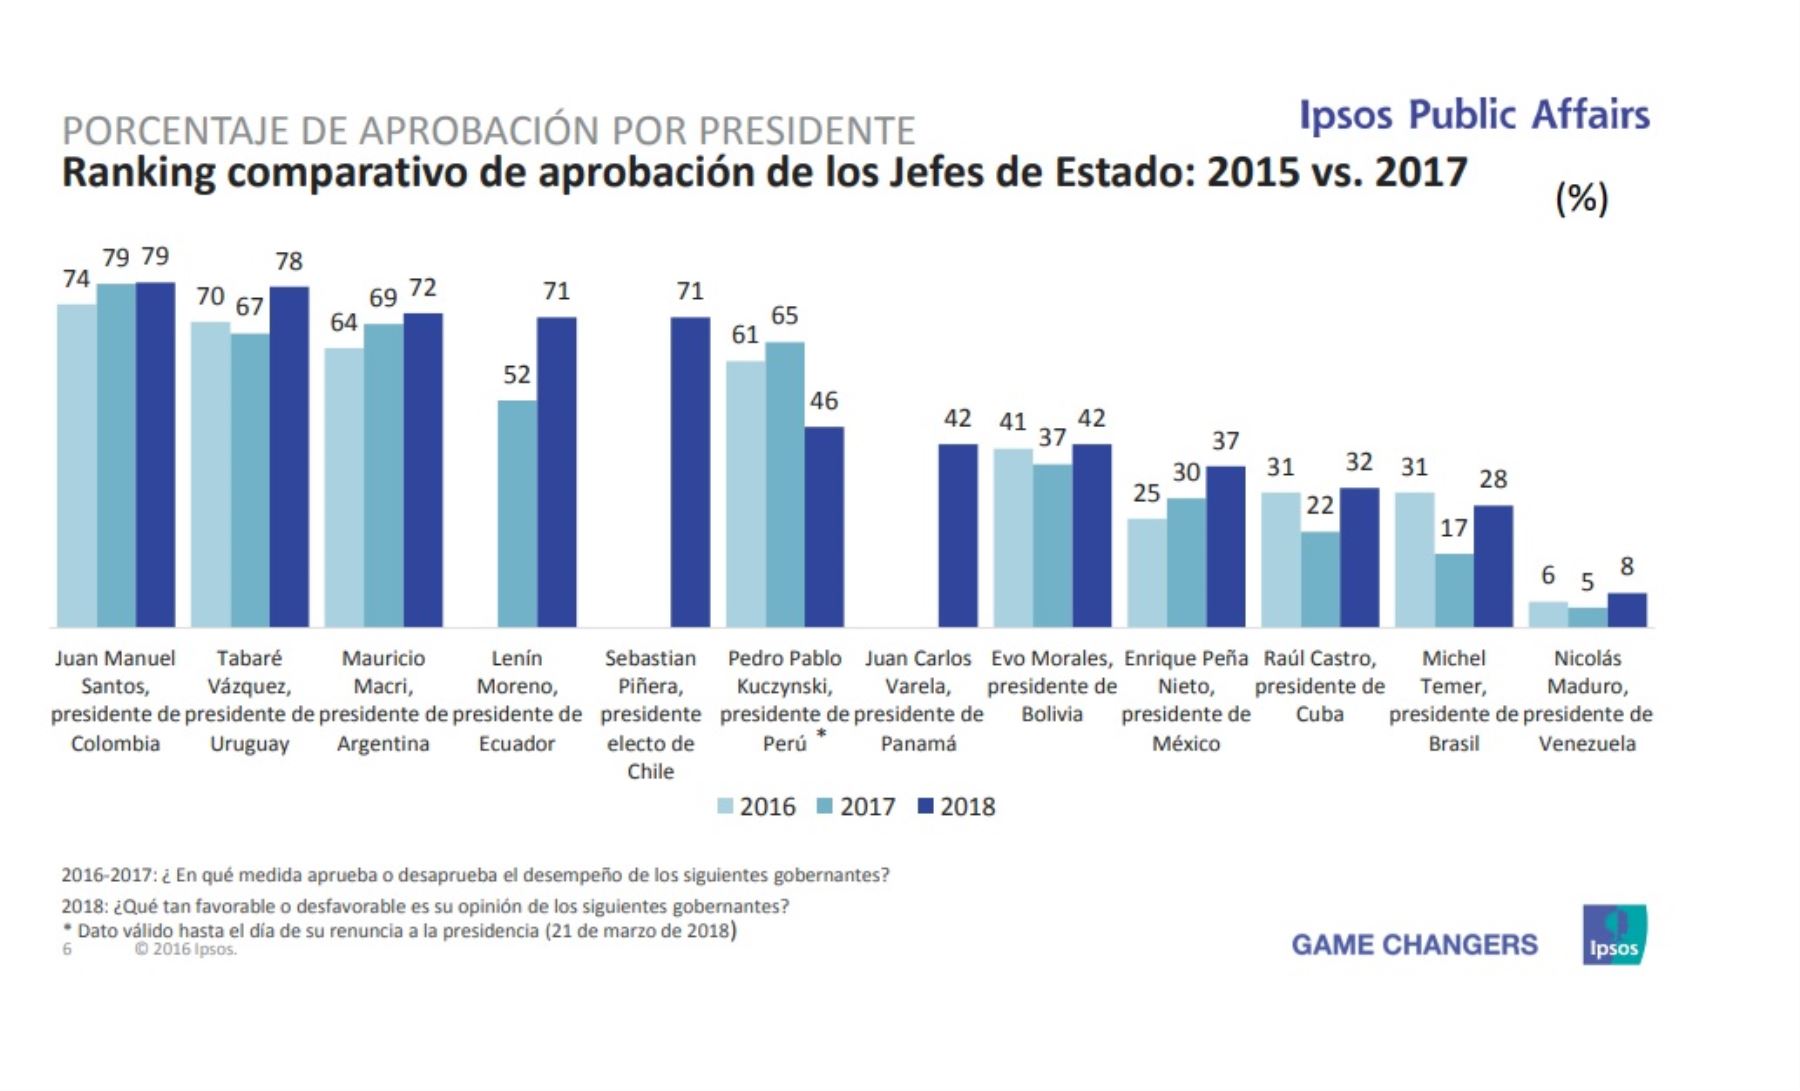 Ranking comparativo de la aprobación de los presidentes 2015 VS 2017. Encuesta
Ipsos Public Affairs.